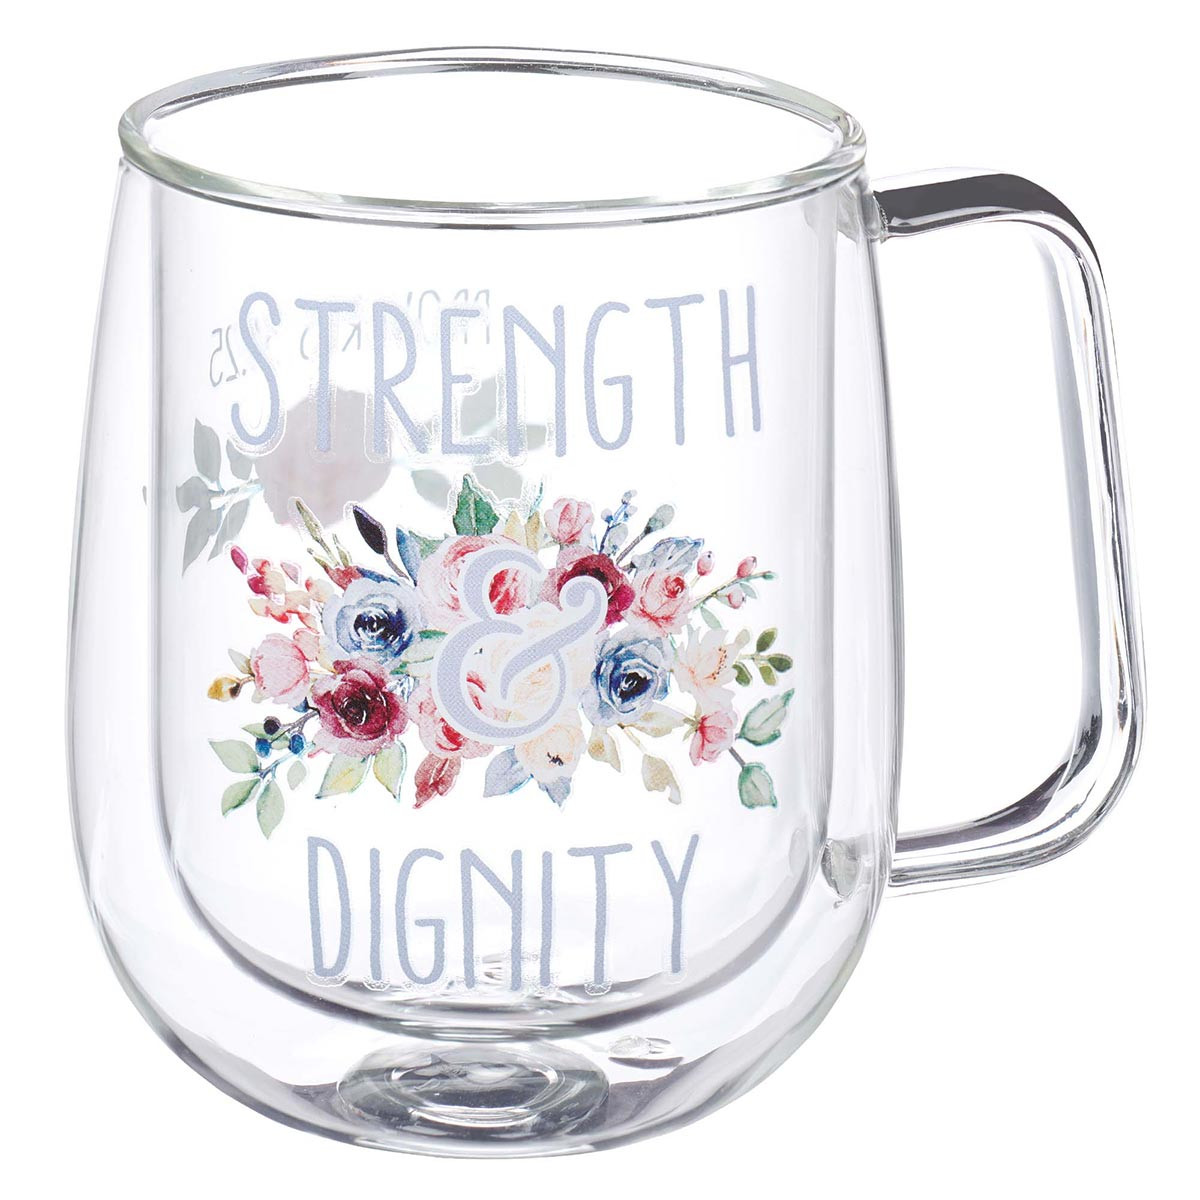 STRENGTH AND DIGNITY GLASS MUG